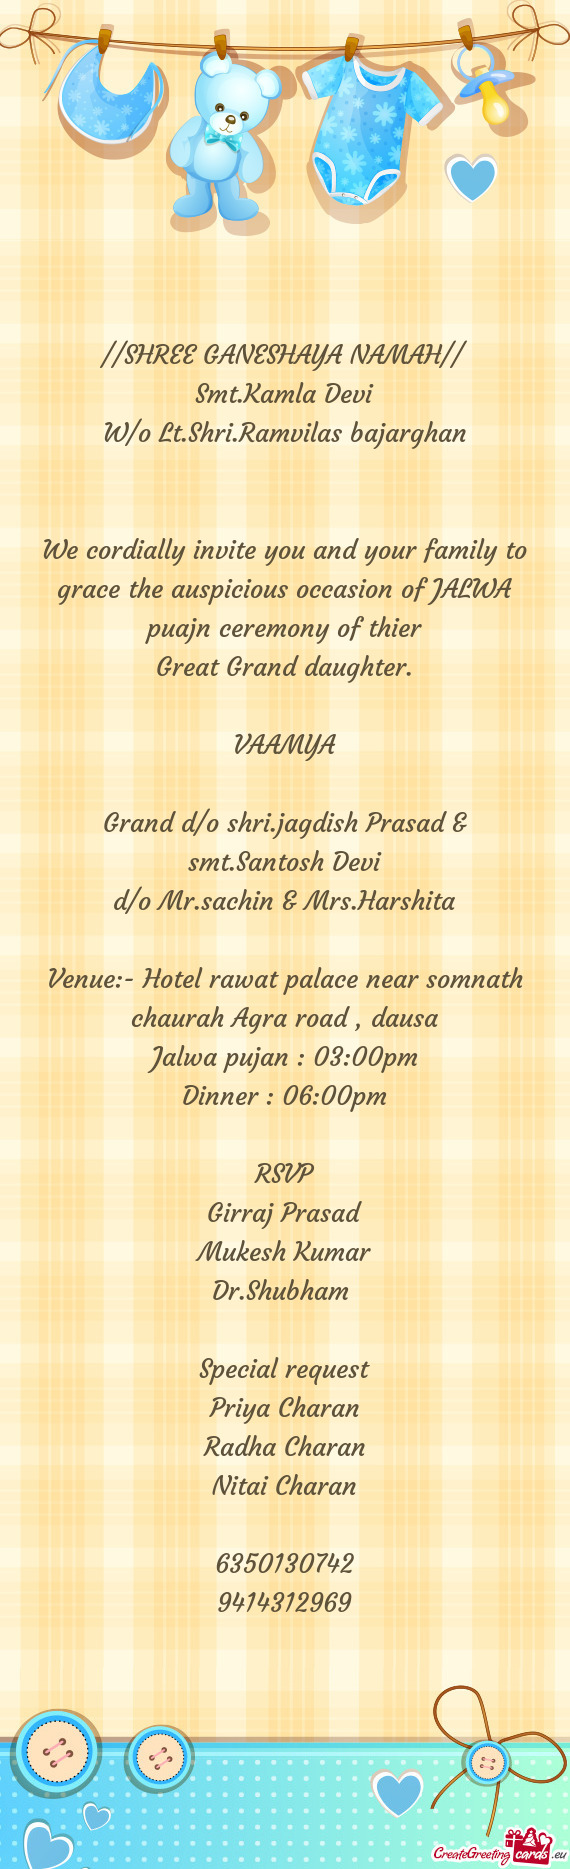 Grand d/o shri.jagdish Prasad & smt.Santosh Devi